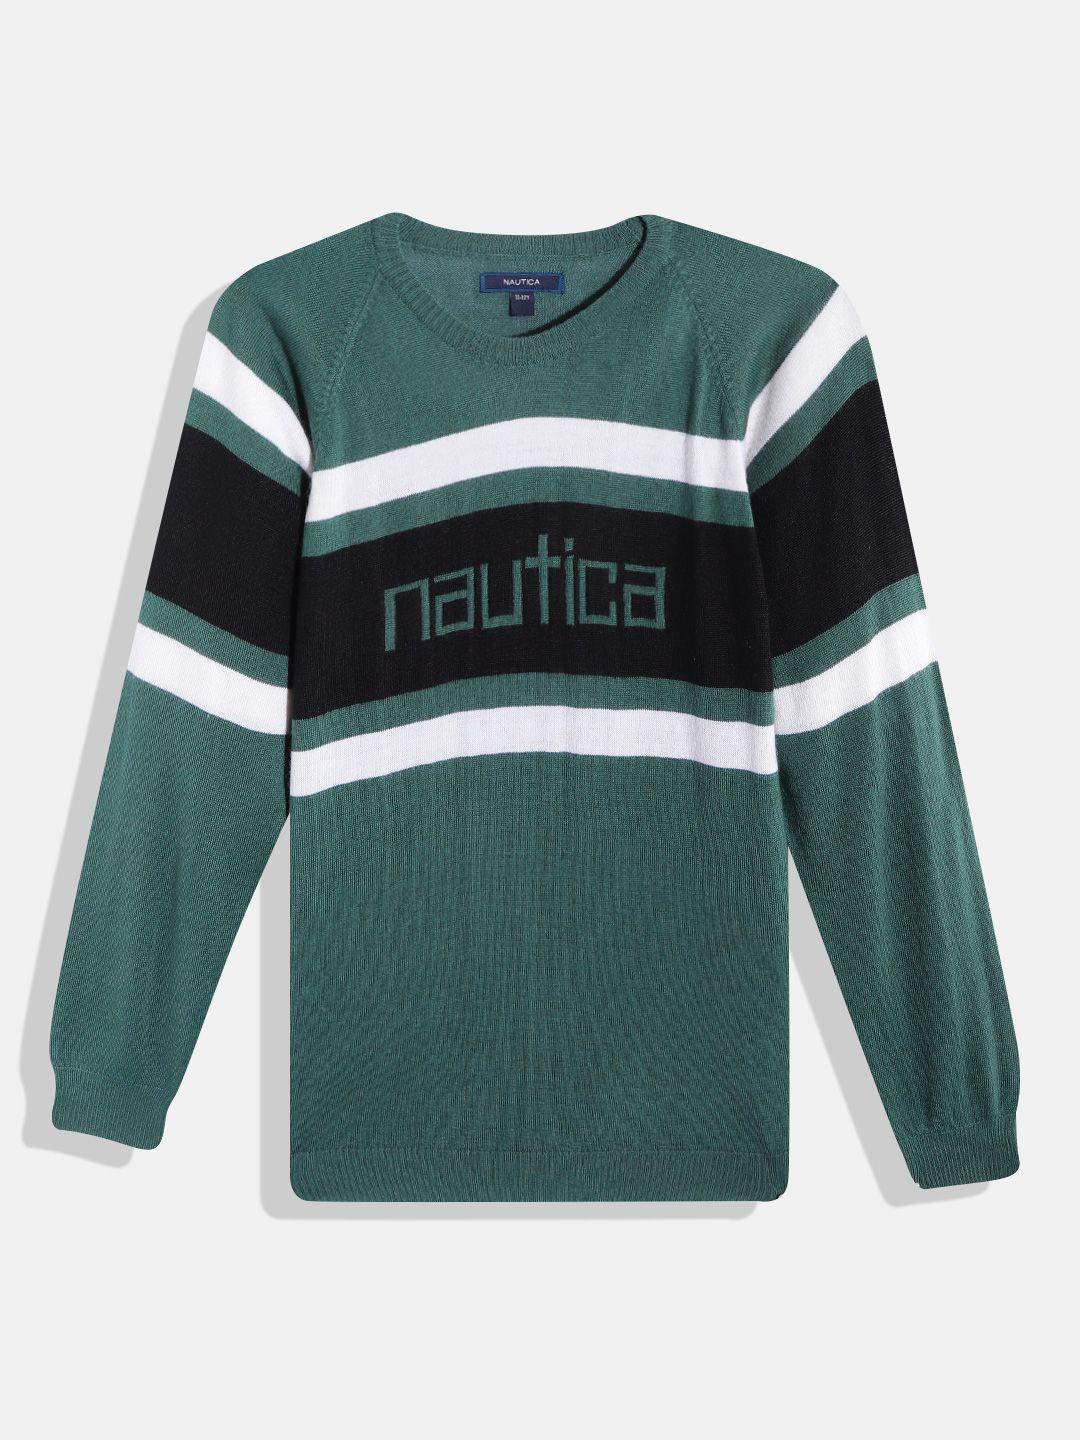 nautica-boys-green-&-black-striped-round-neck-pullover